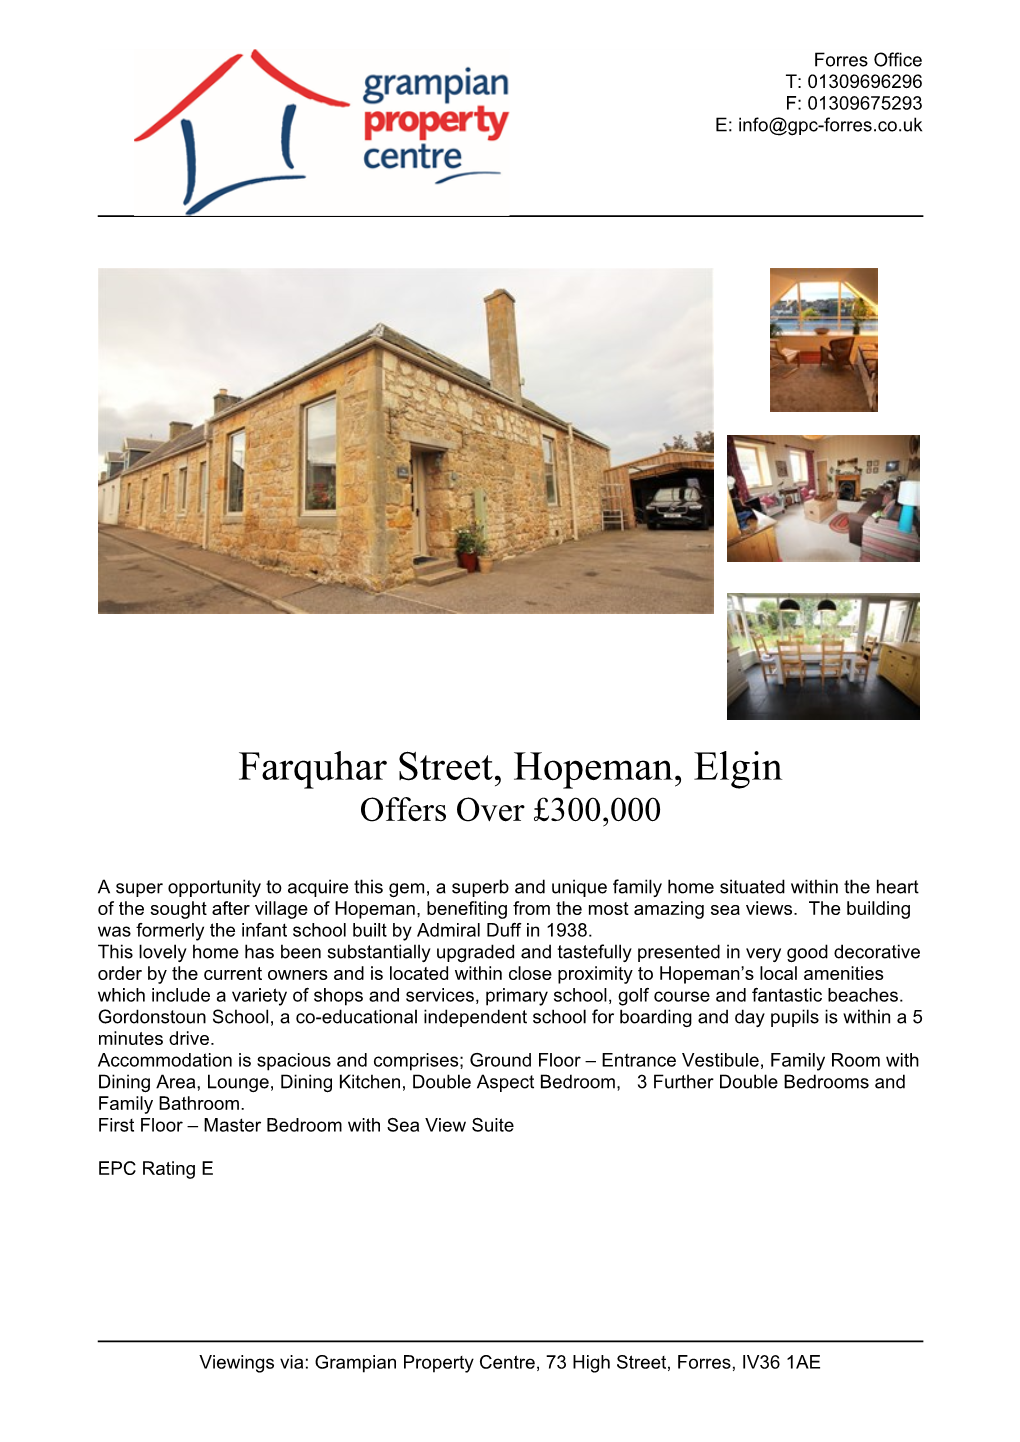 Farquhar Street, Hopeman, Elgin Offers Over £300,000